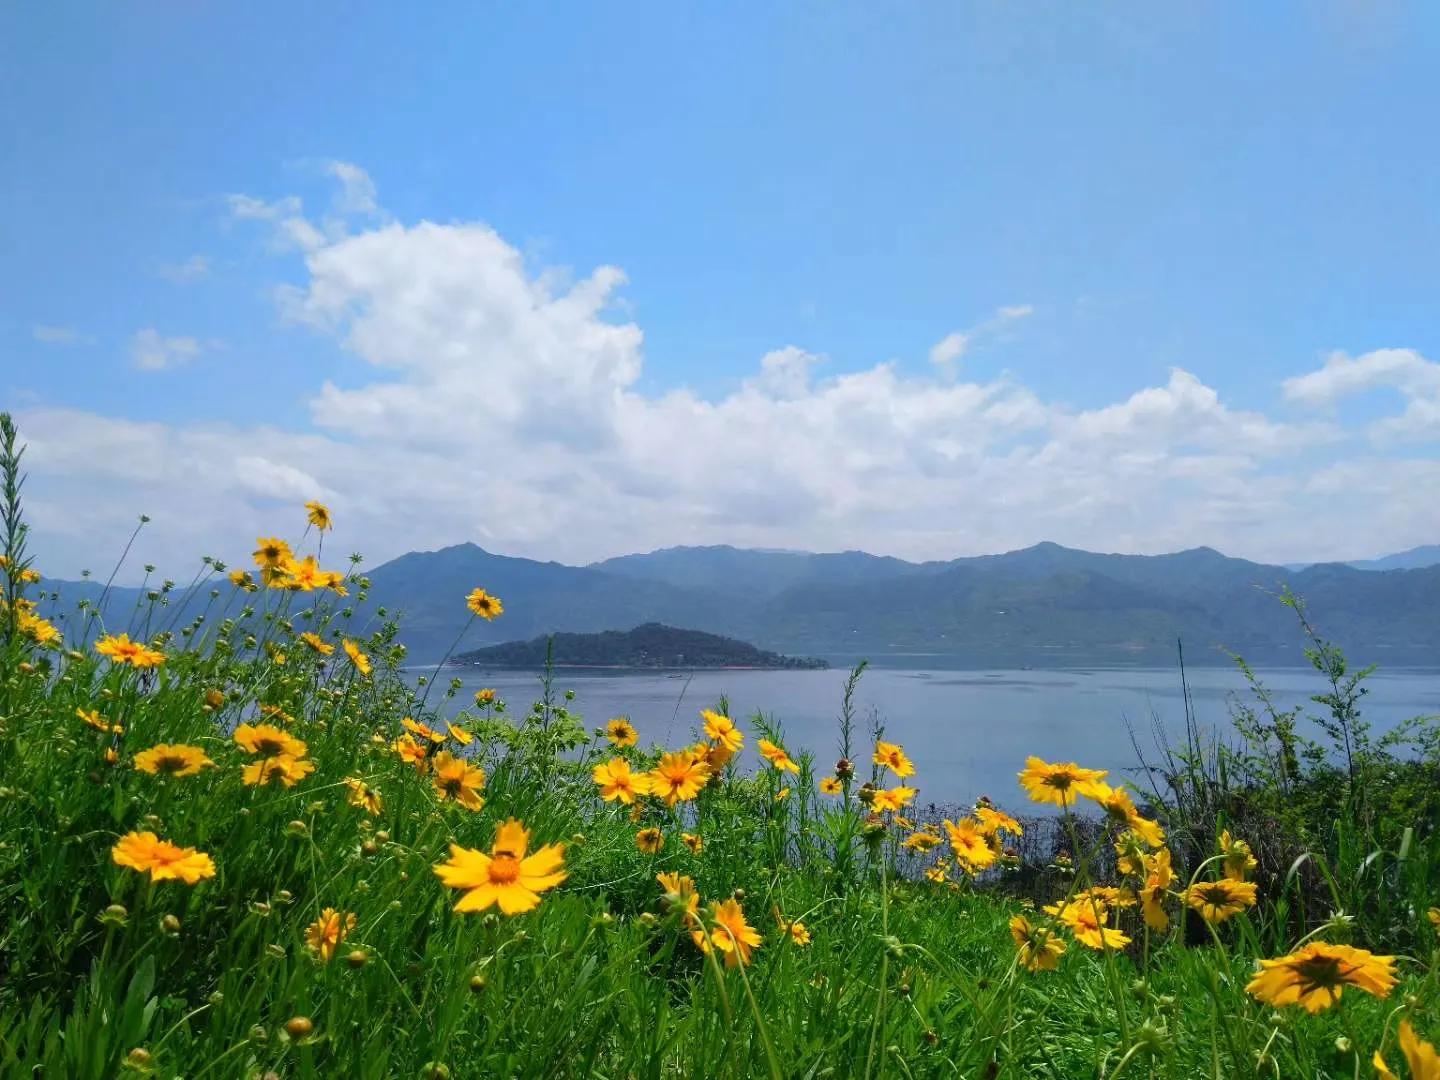 「国内自驾」之东江湖(湖南郴州)—浩渺处寻找原始的感动